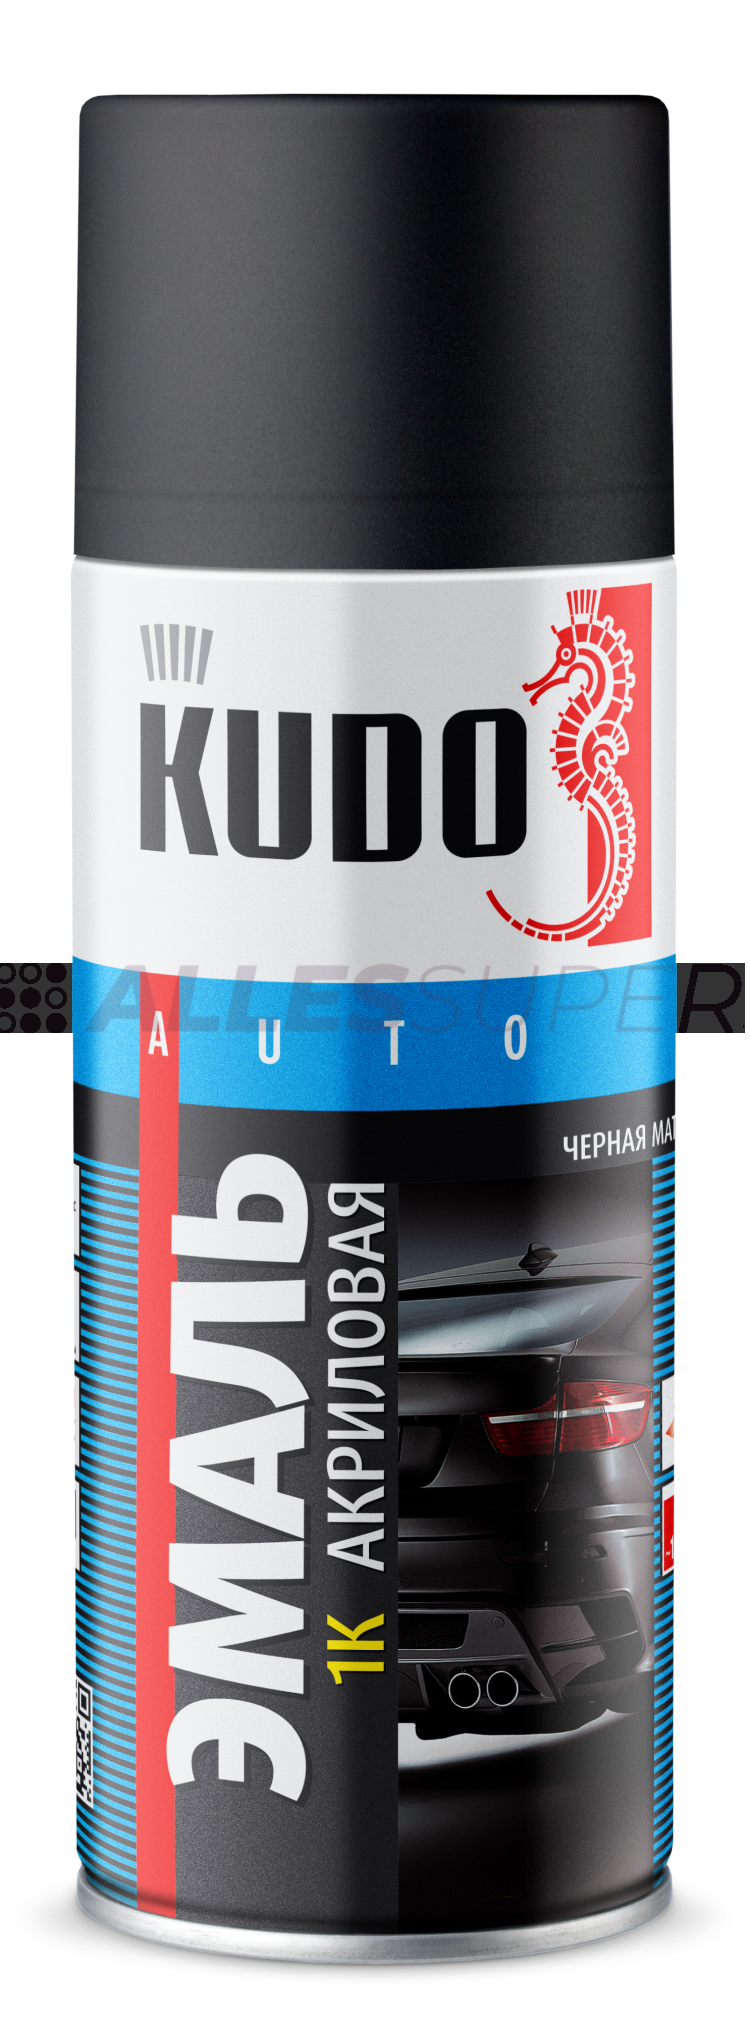 Kudo эмаль черная матовая. Эмаль для дисков Kudo 520. Алюминий эмаль для дисков 520мл ku-5201 Kudo. Черная эмаль для дисков 520мл ku-5203 Kudo. Эмаль д/дисков черная Kudo ku-5203.